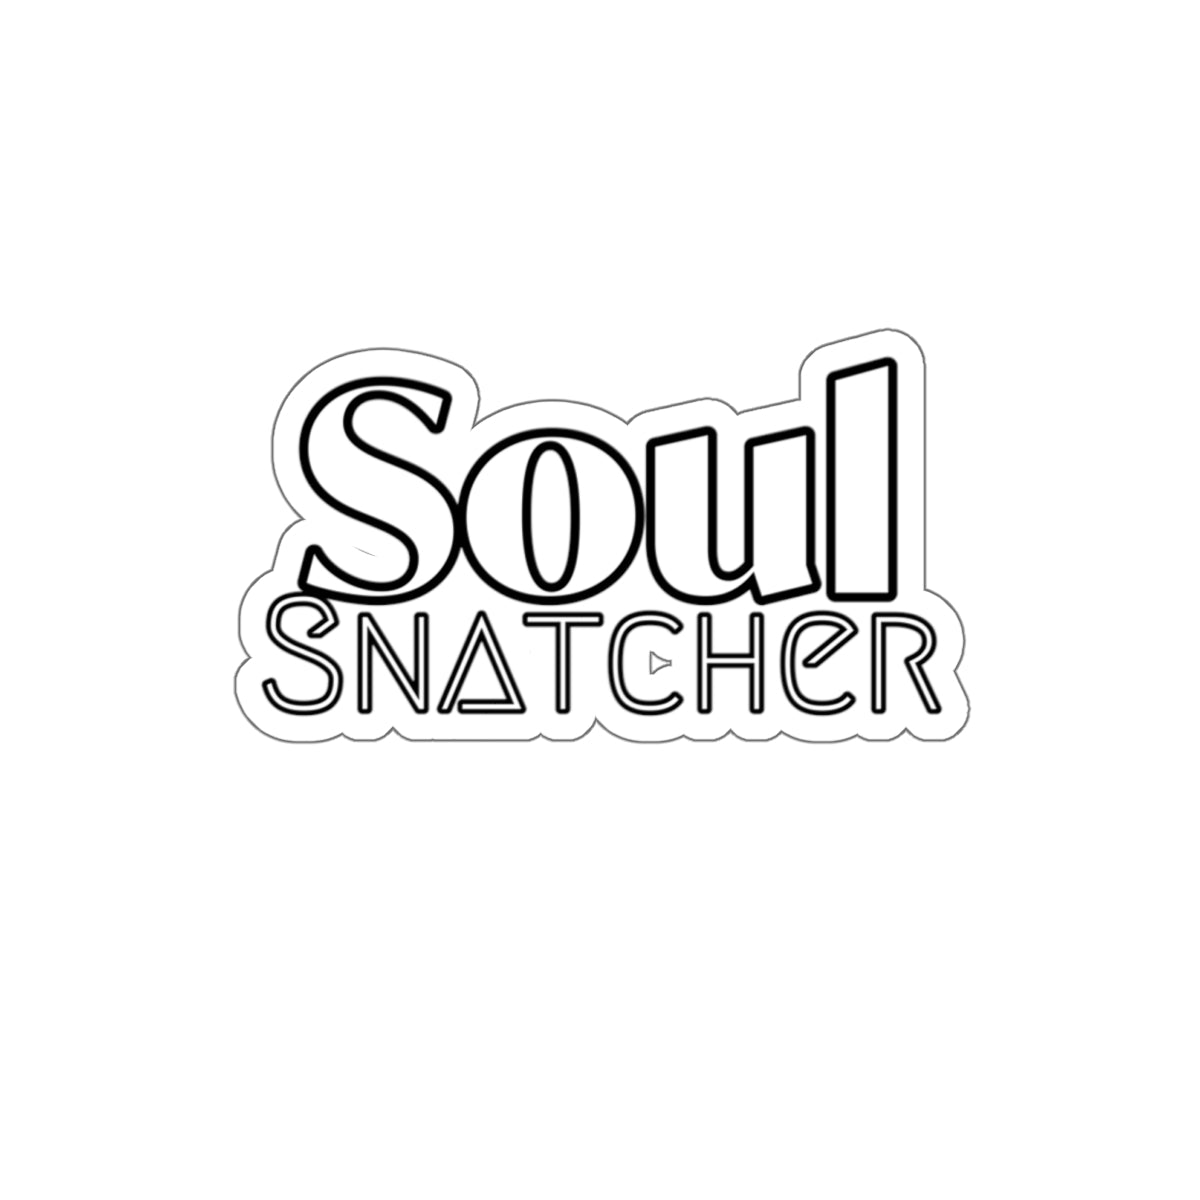 SOUL SNATCHER Decal/Sticker - The Bible Junkies®